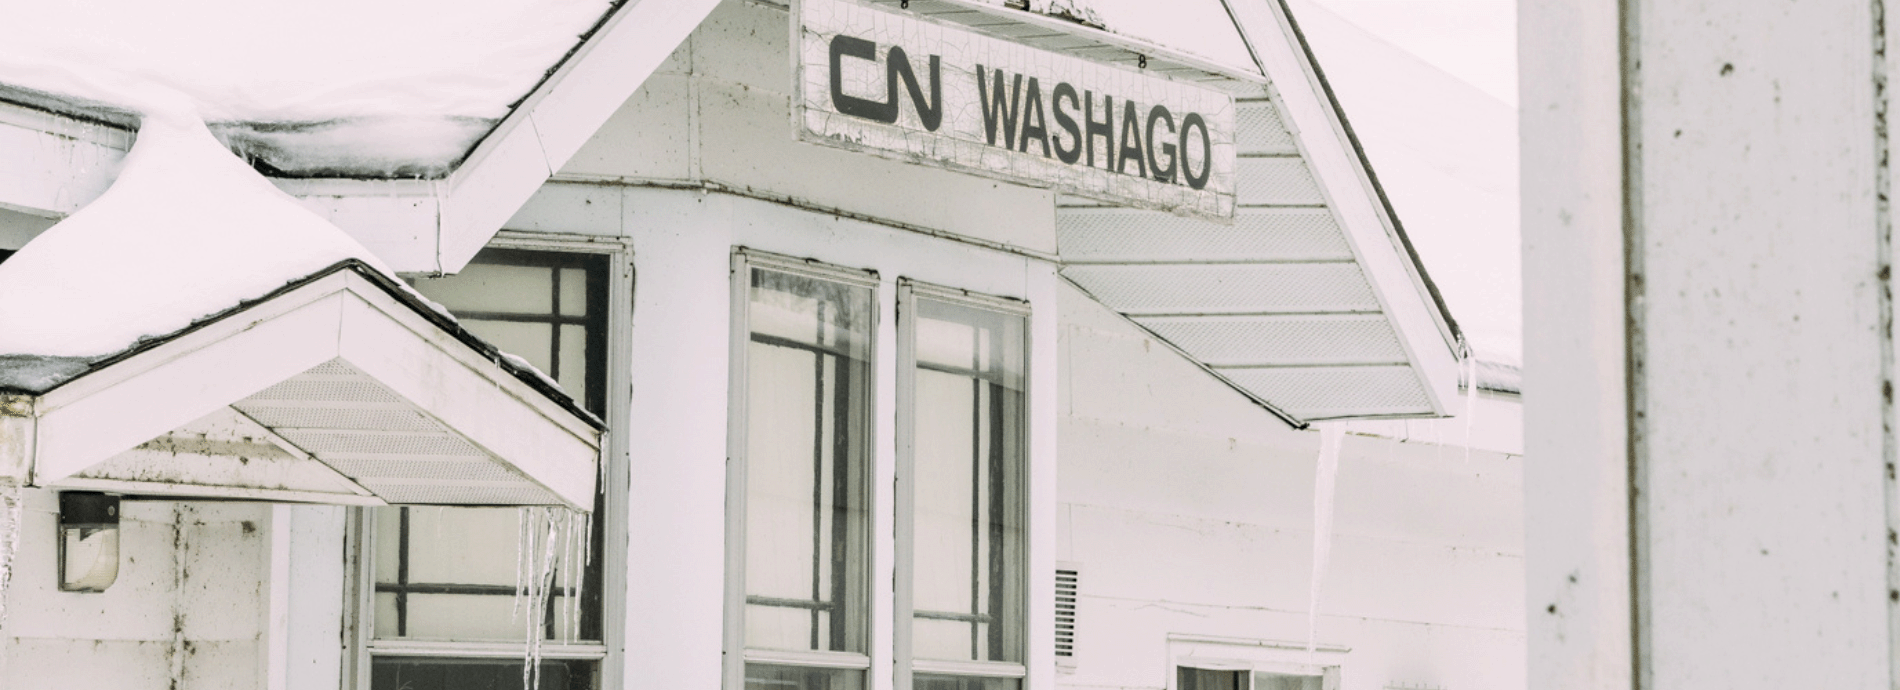 CN Washago building